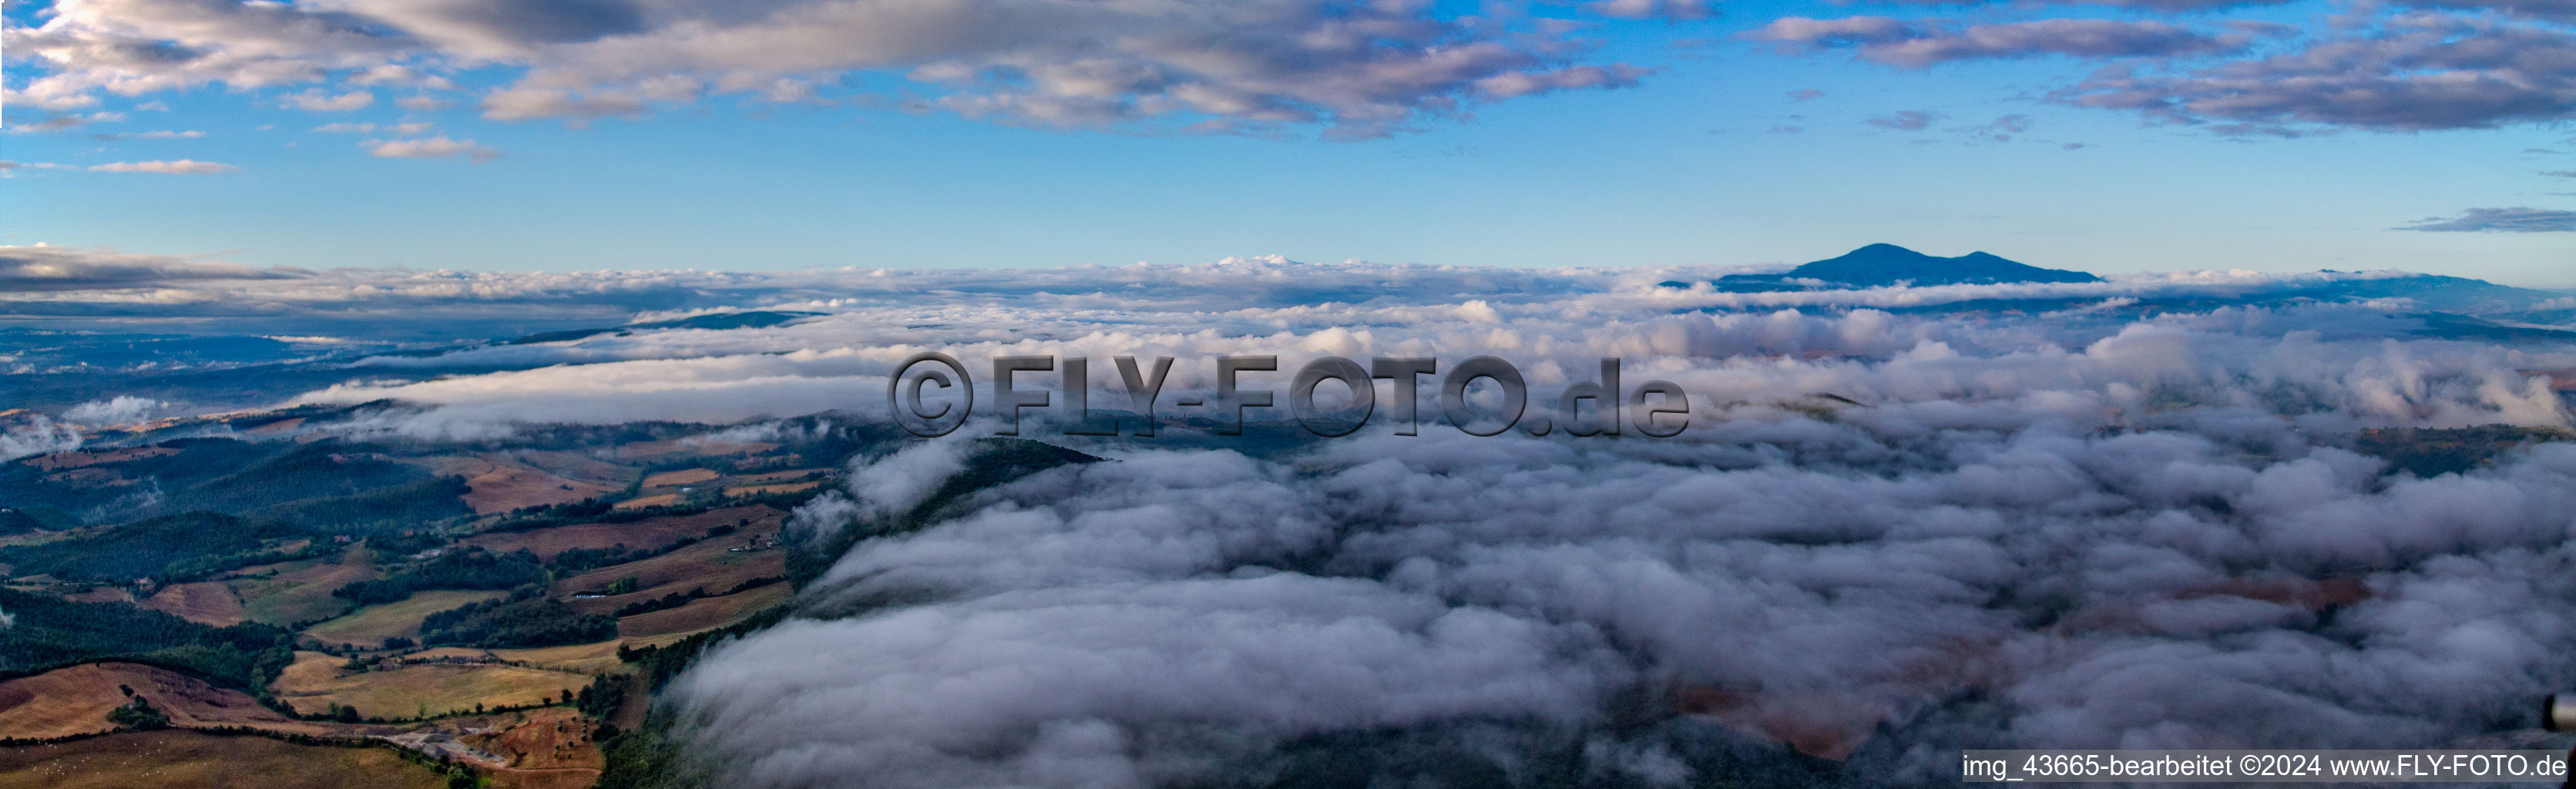 Panorama des Sonnenaufgang über Wolken und der Landschaft mit Gleitschirmpiloten in Montepulciano in Toscana, Italien